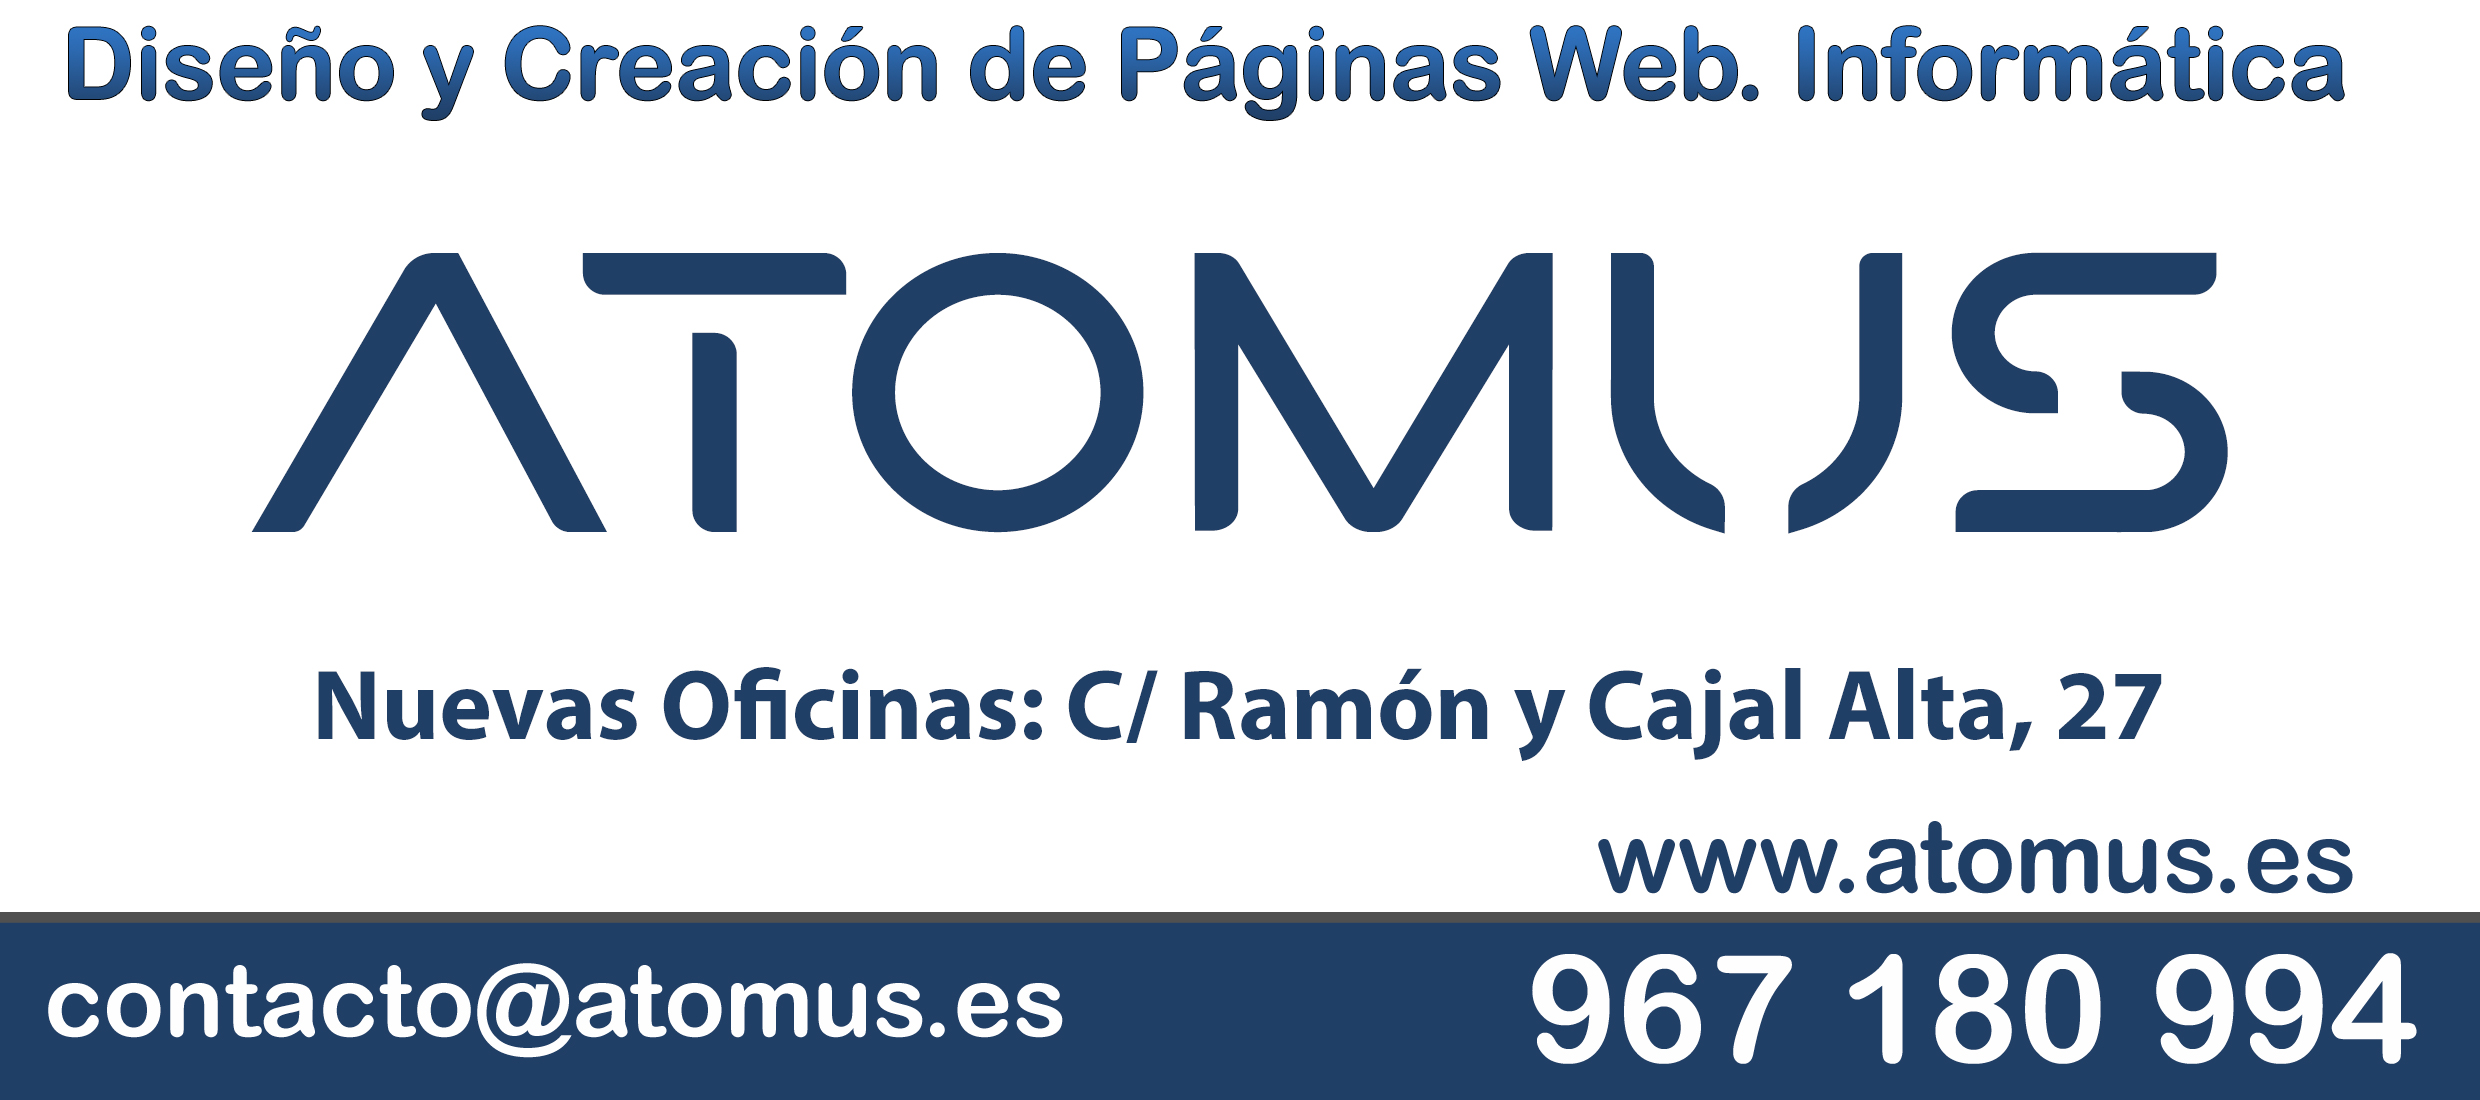 (c) Atomus.es